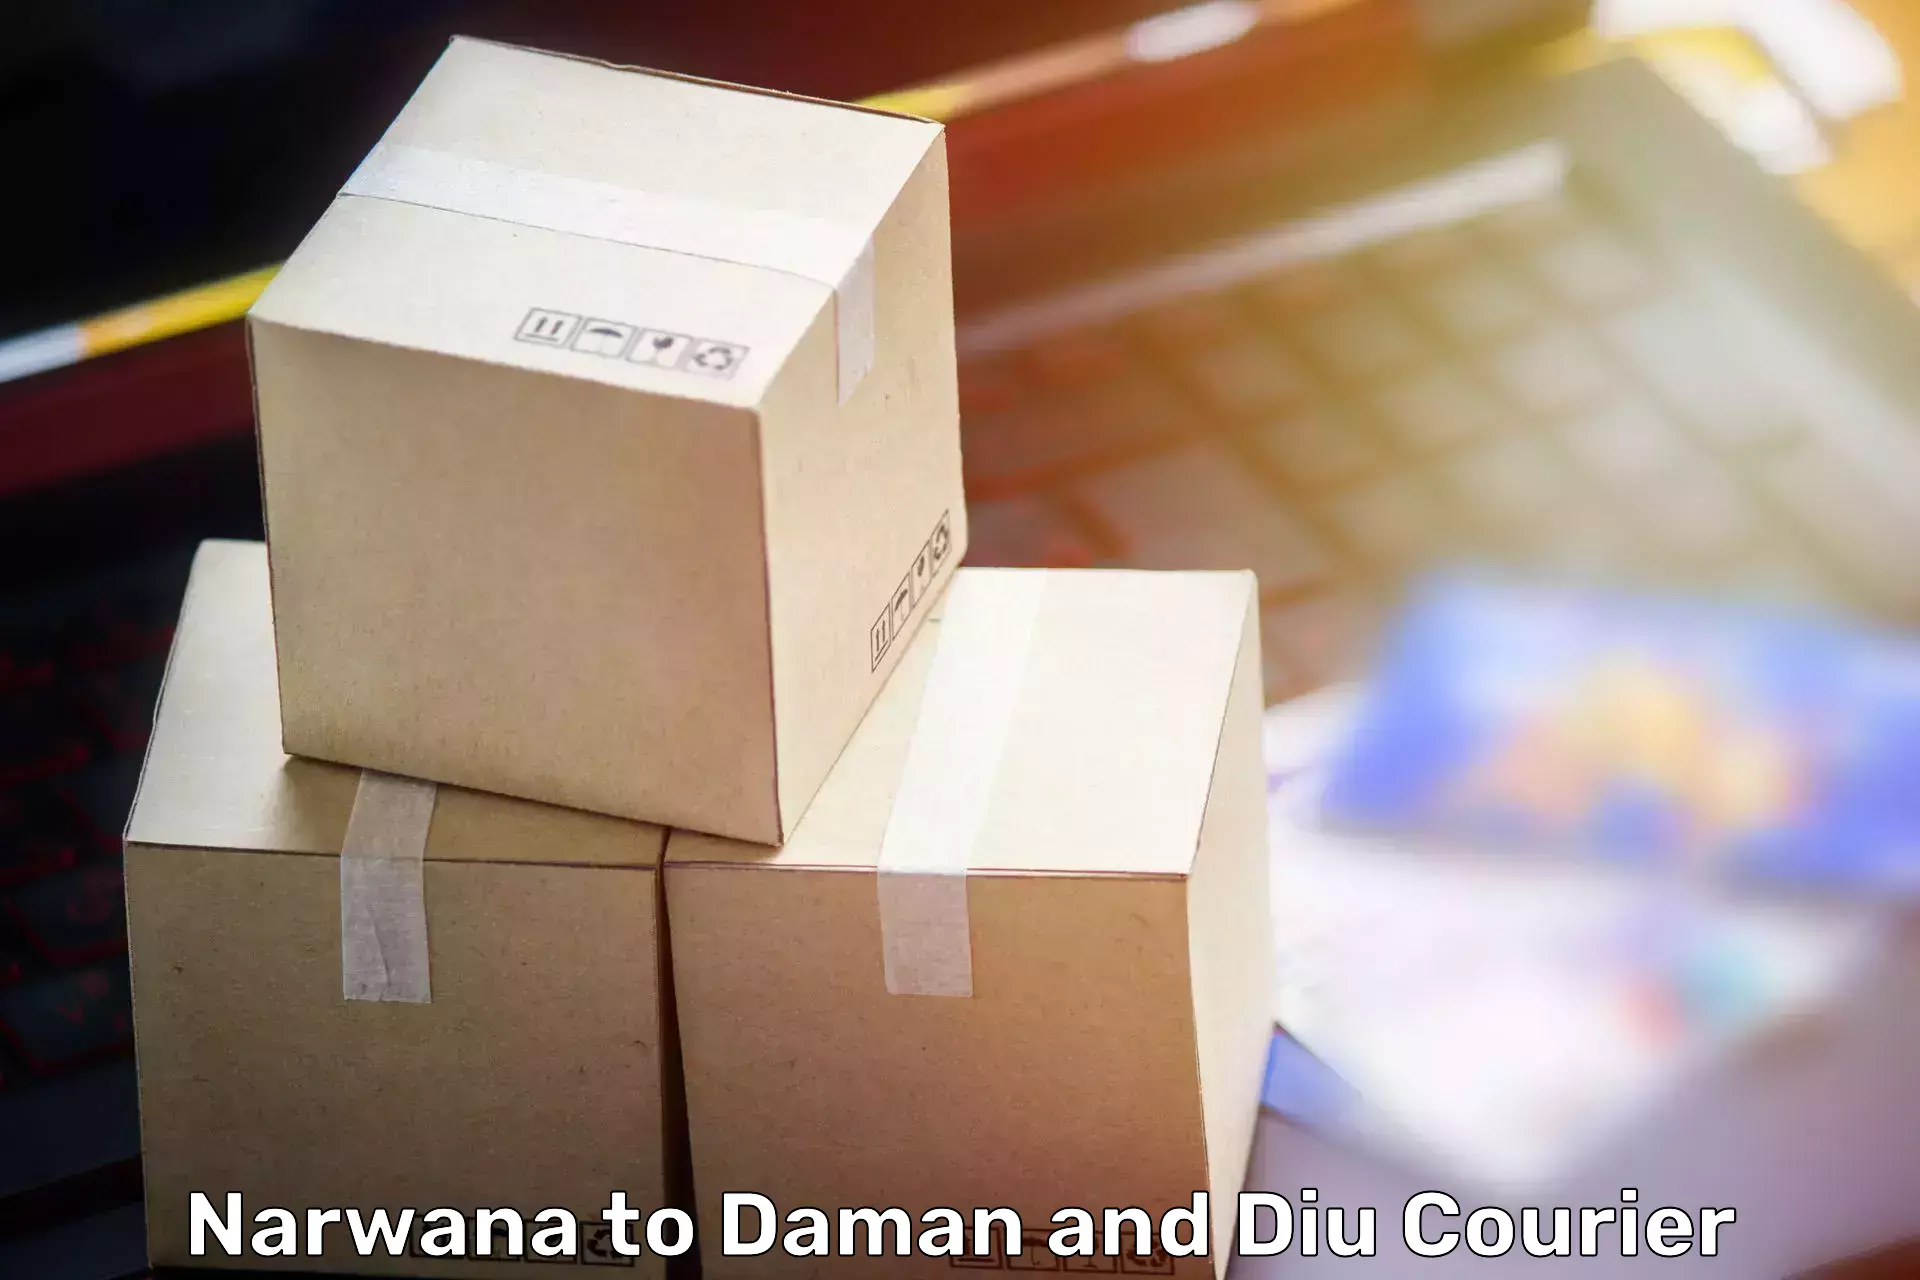 Skilled furniture transporters Narwana to Daman